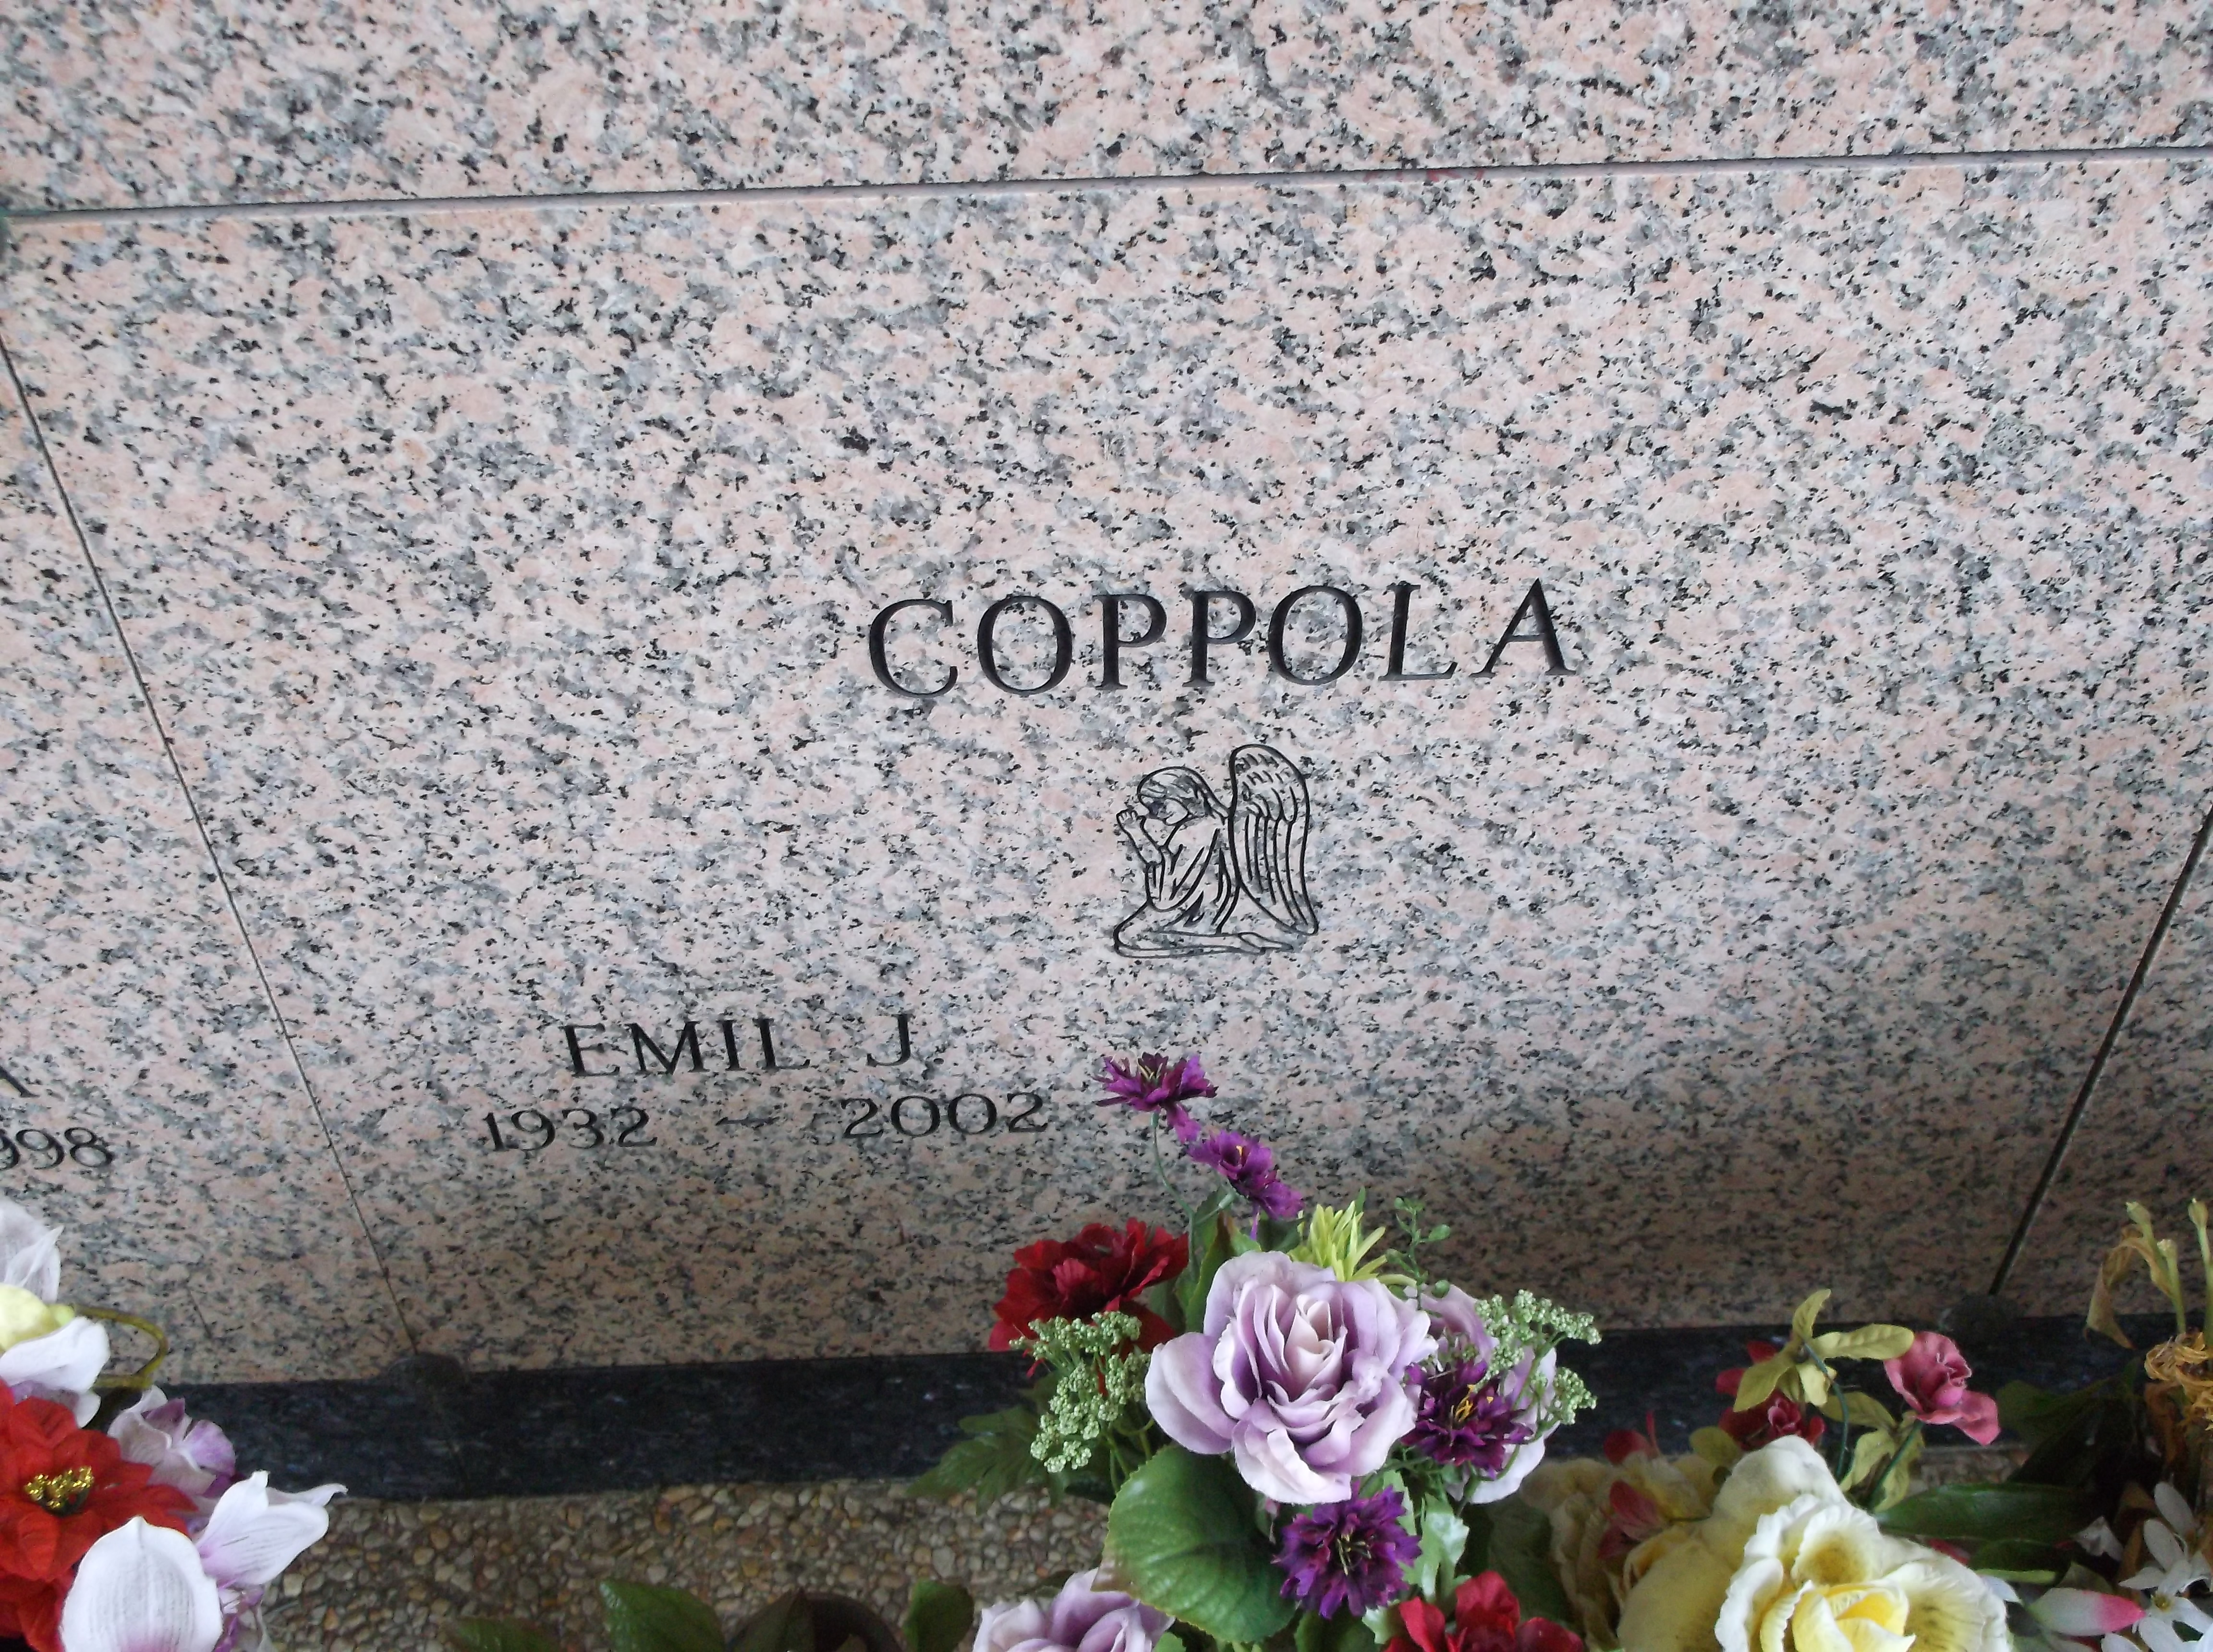 Emil J Coppola